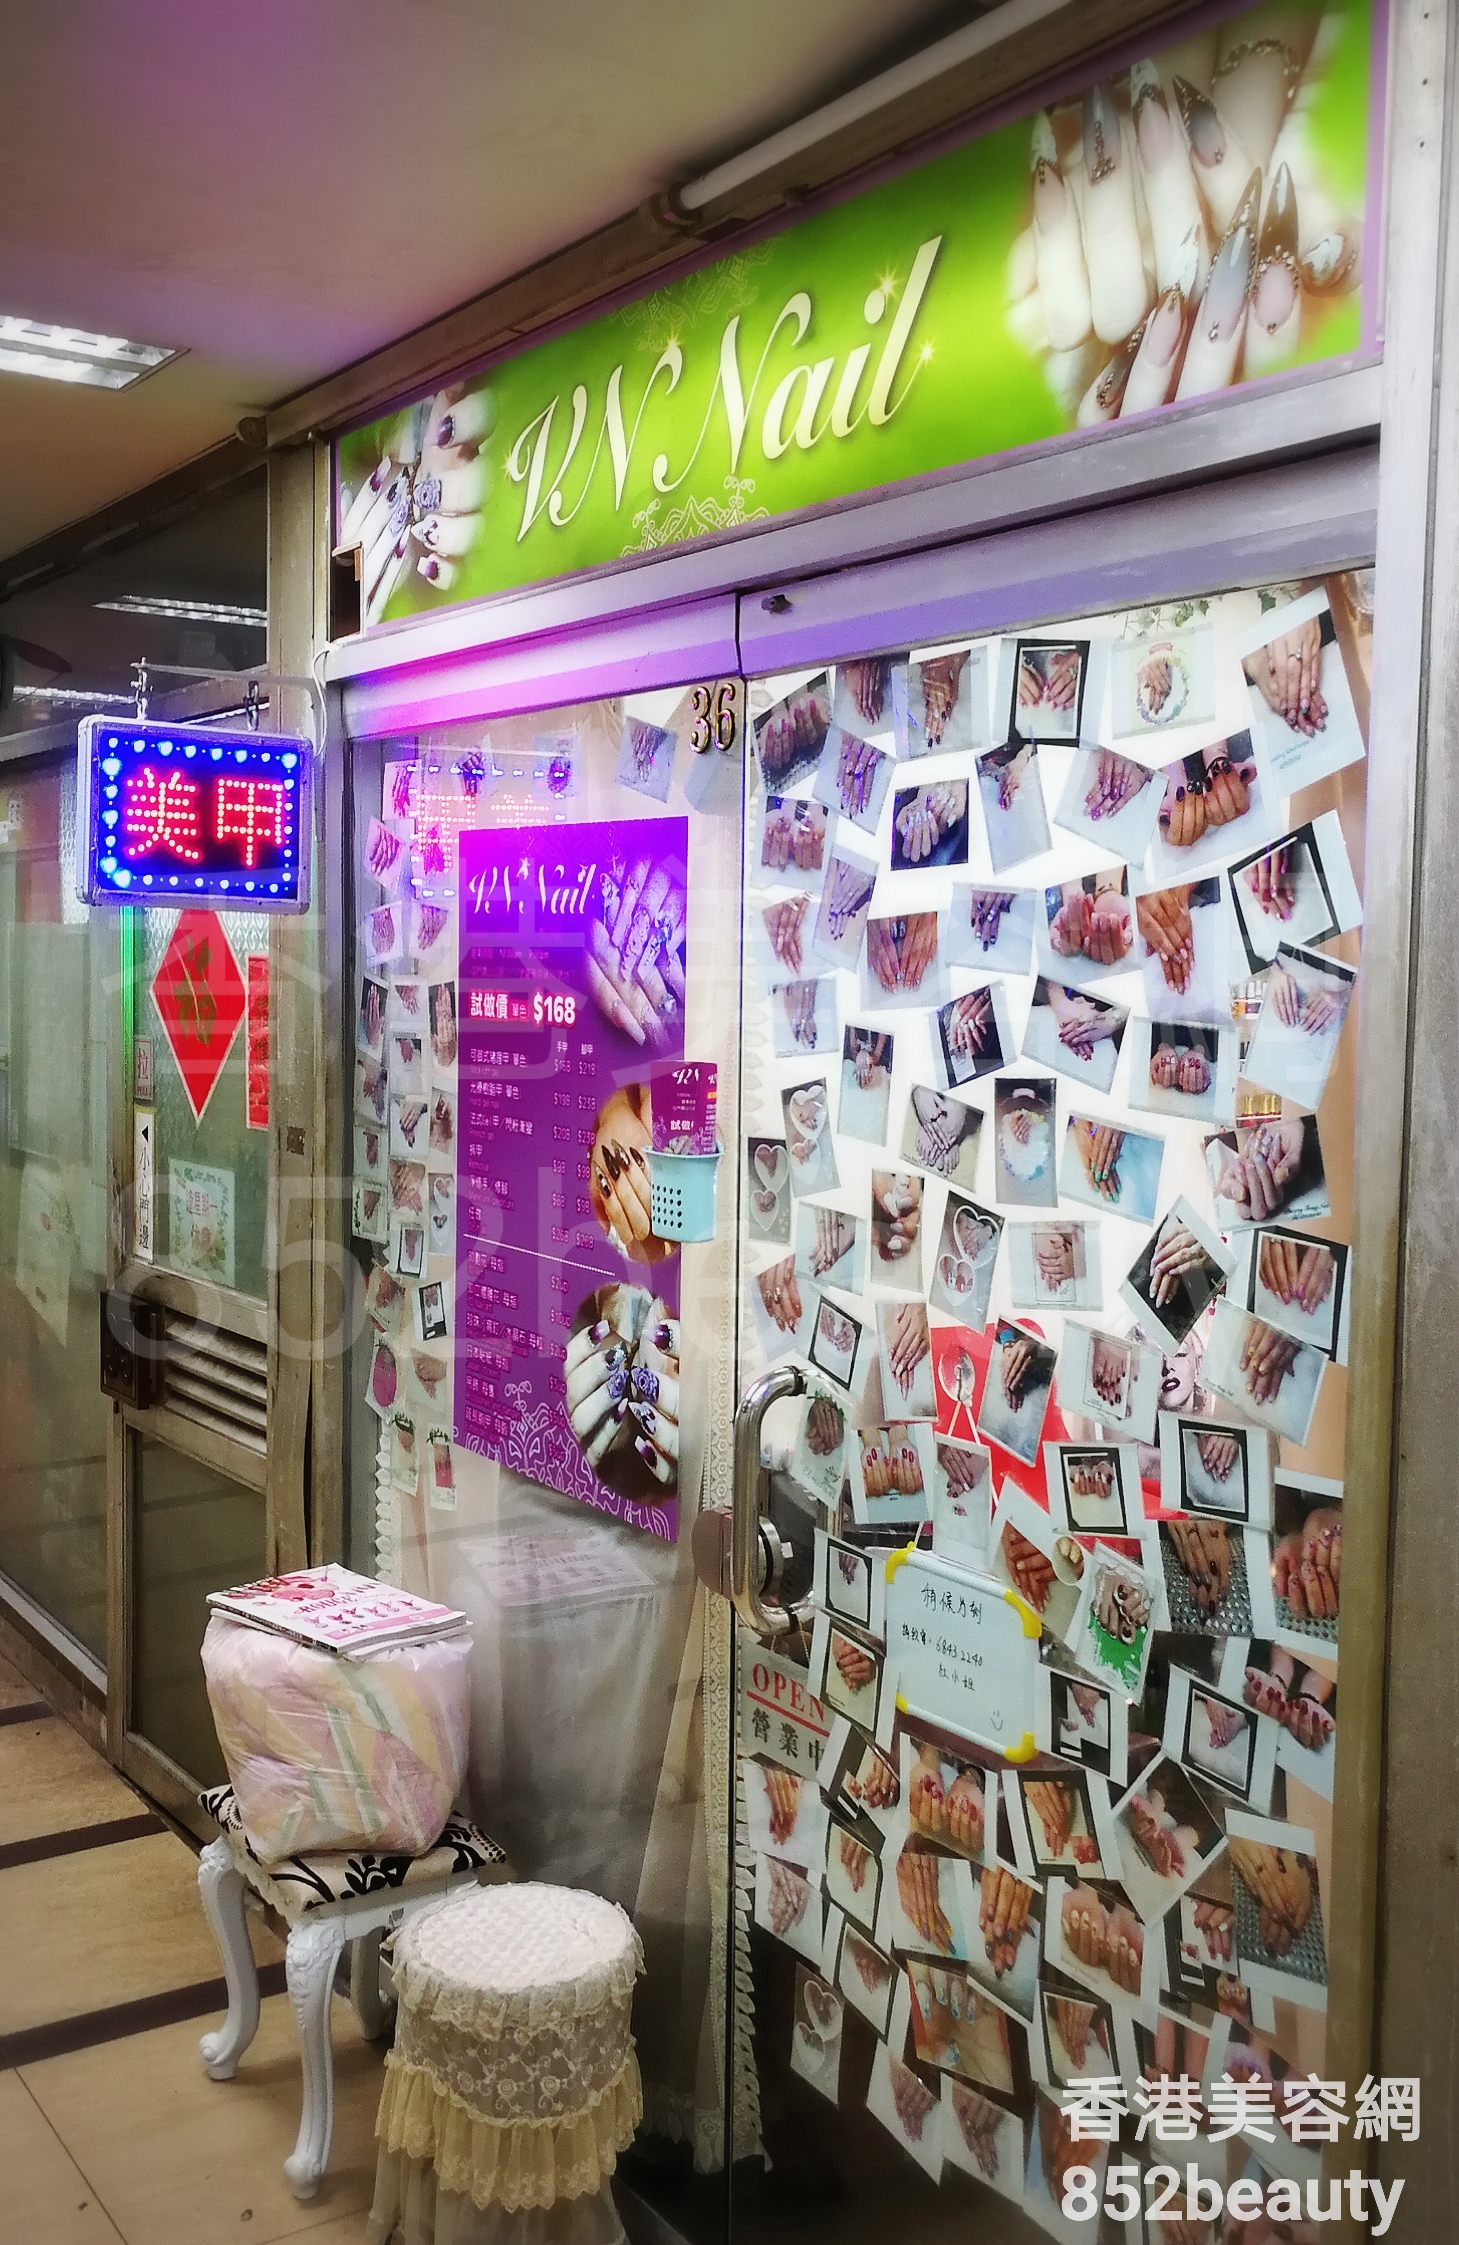 香港美容網 Hong Kong Beauty Salon 美容院 / 美容師: VN Nail